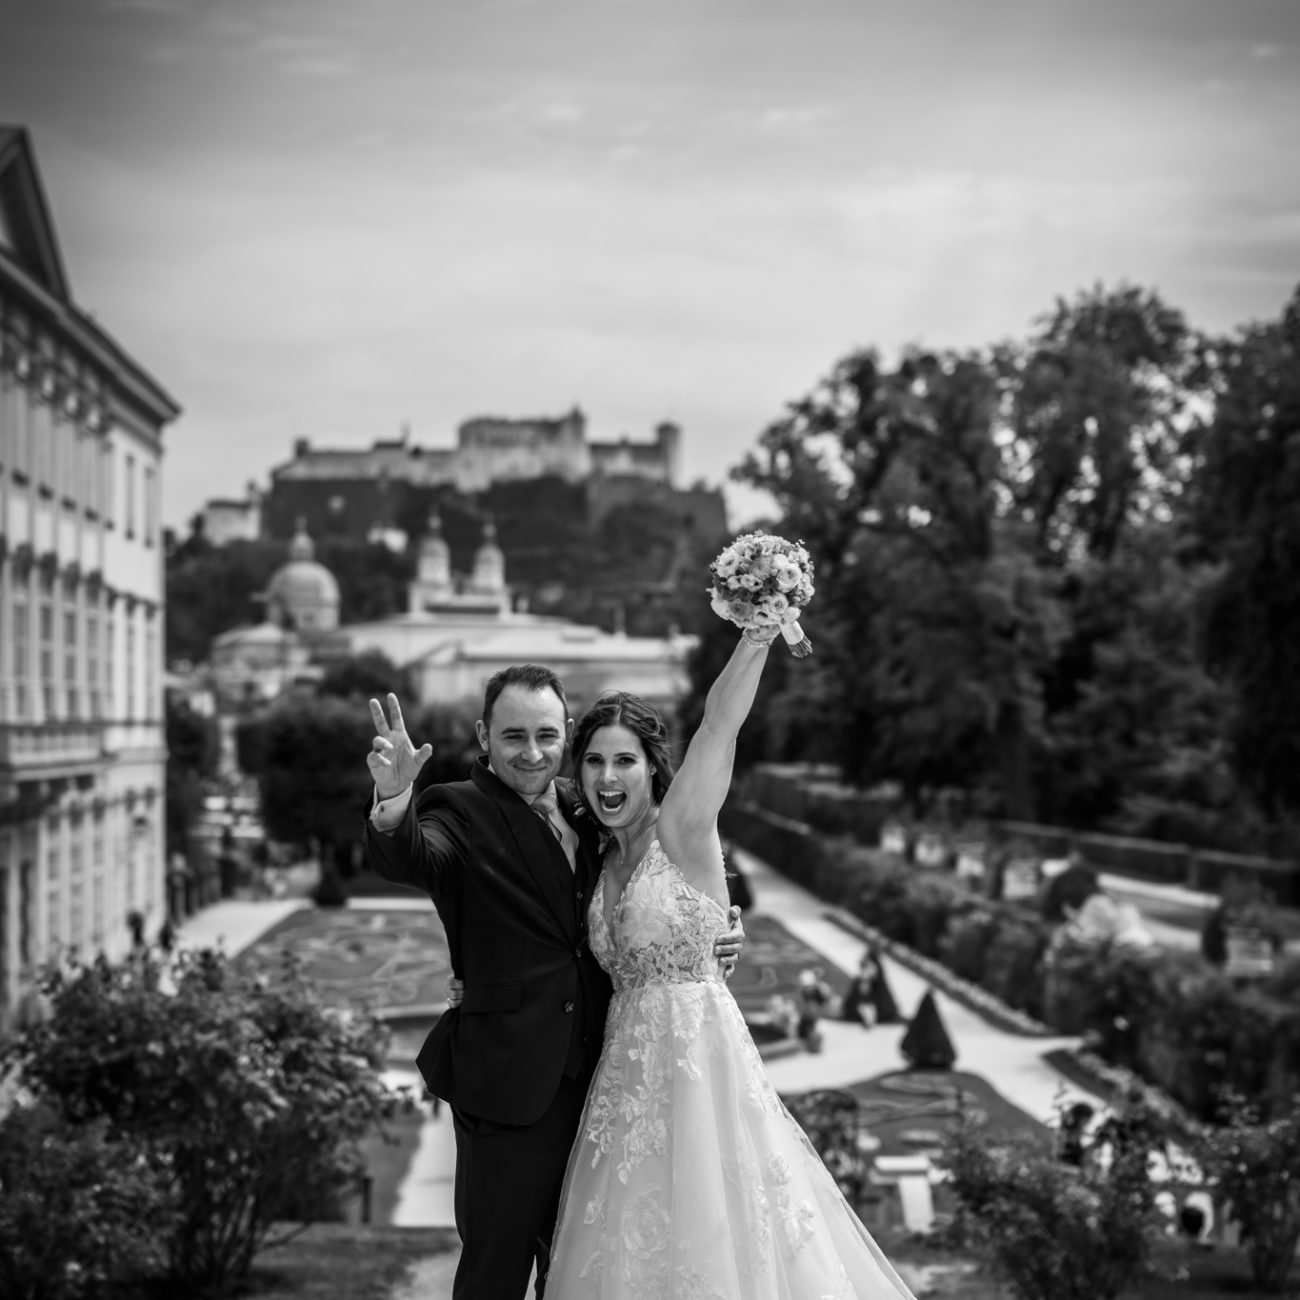 Hochzeit von Insa und Alexander aus Würzburg im Marmorsaal vom Schloss Mirabell in Salzburg